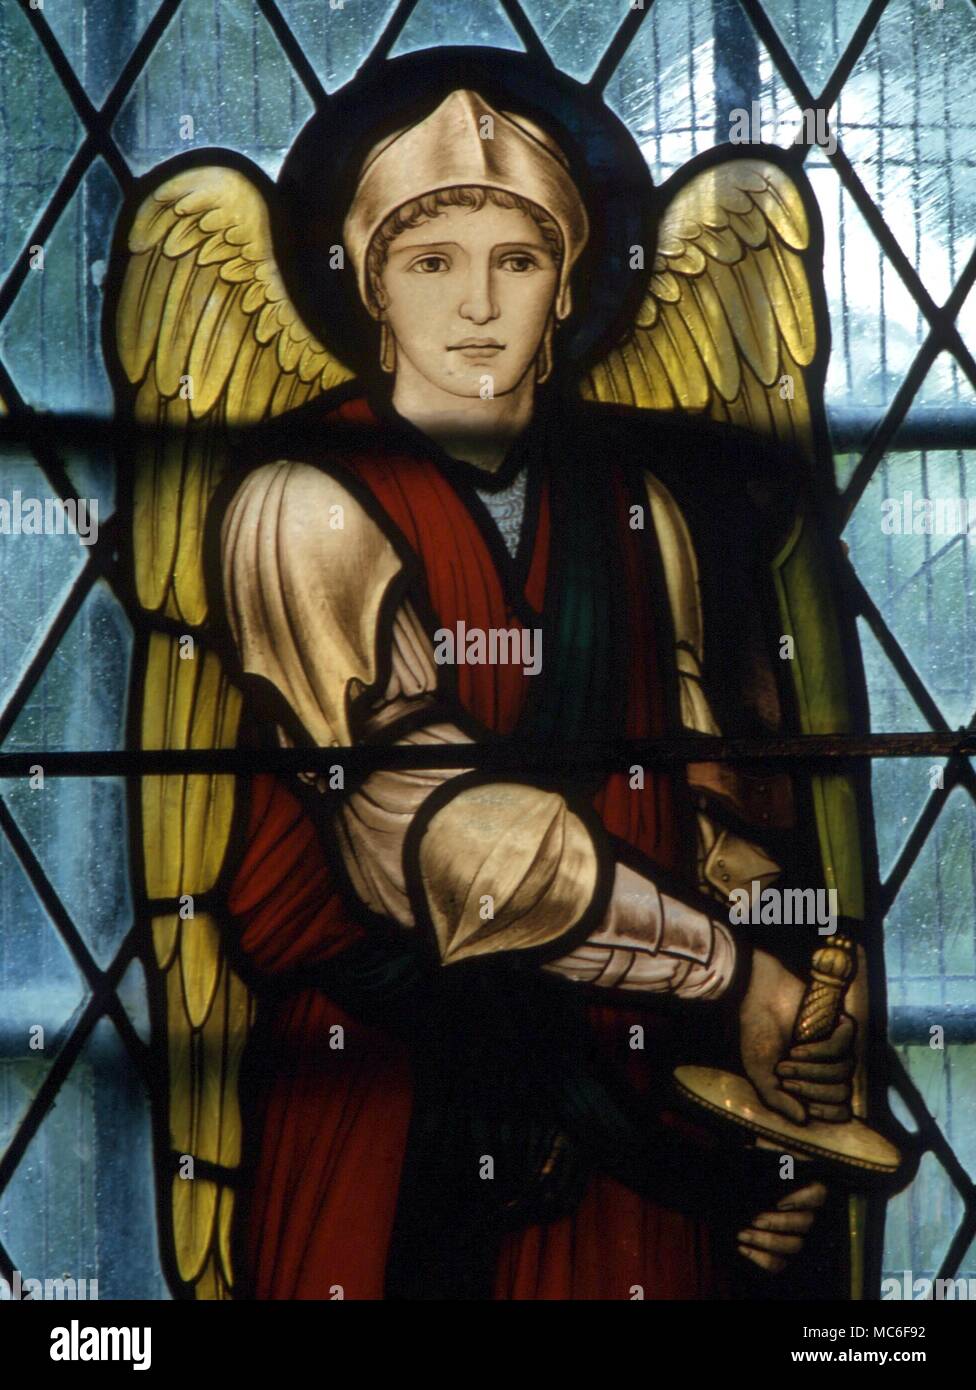 Santi - Testa dell'arcangelo San Michele, dal vetro macchiato nella Chiesa Chaldon, Surrey. Xix secolo il vetro macchiato Foto Stock